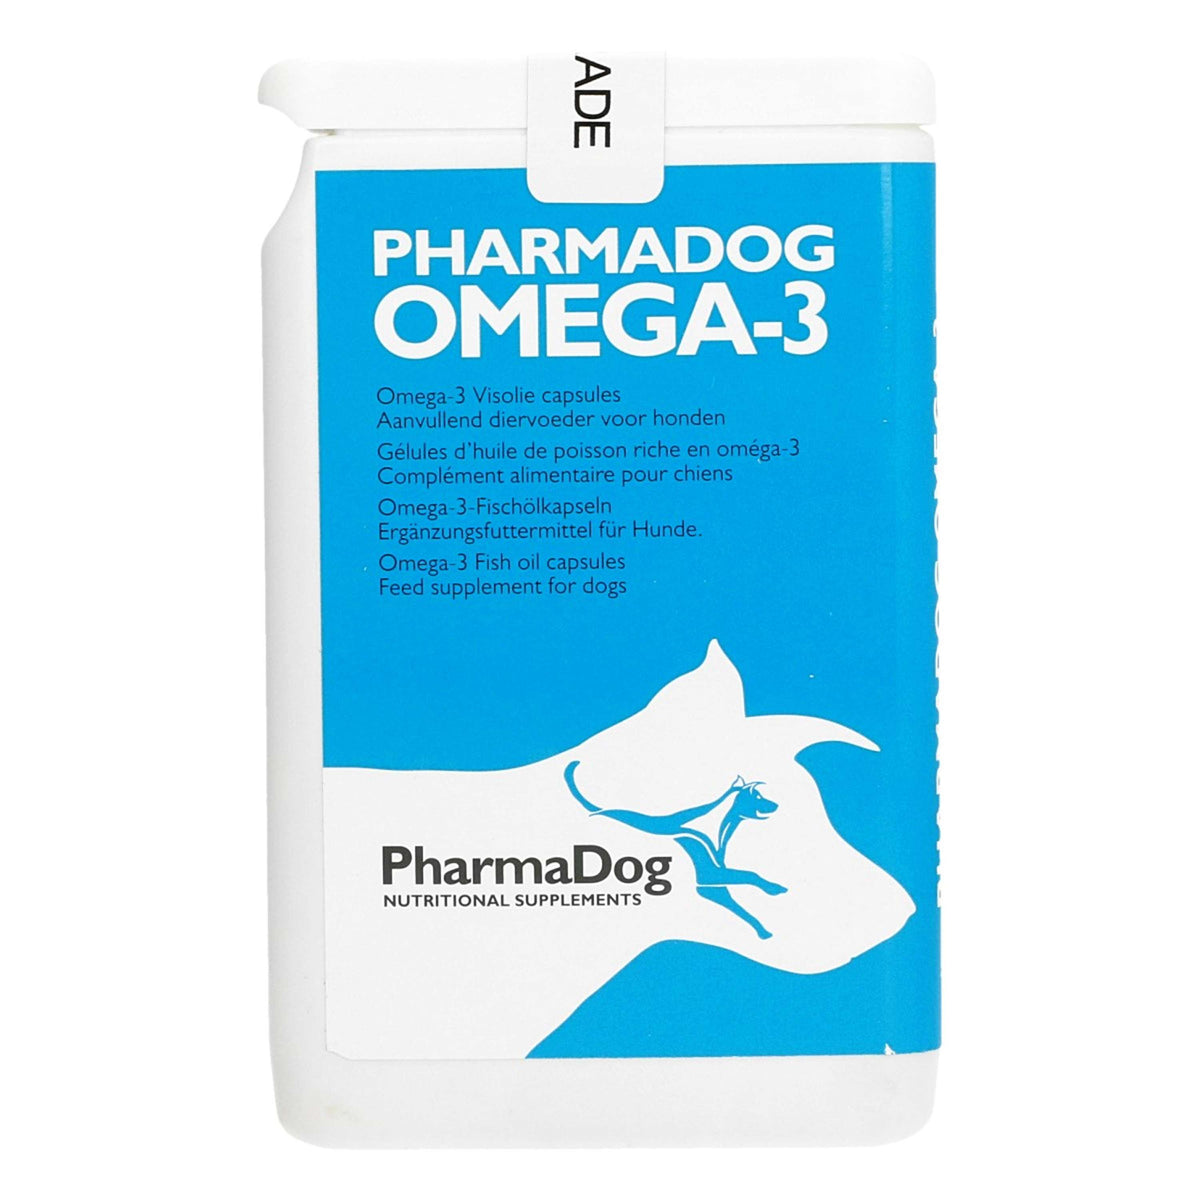 PharmaDog Omega-3